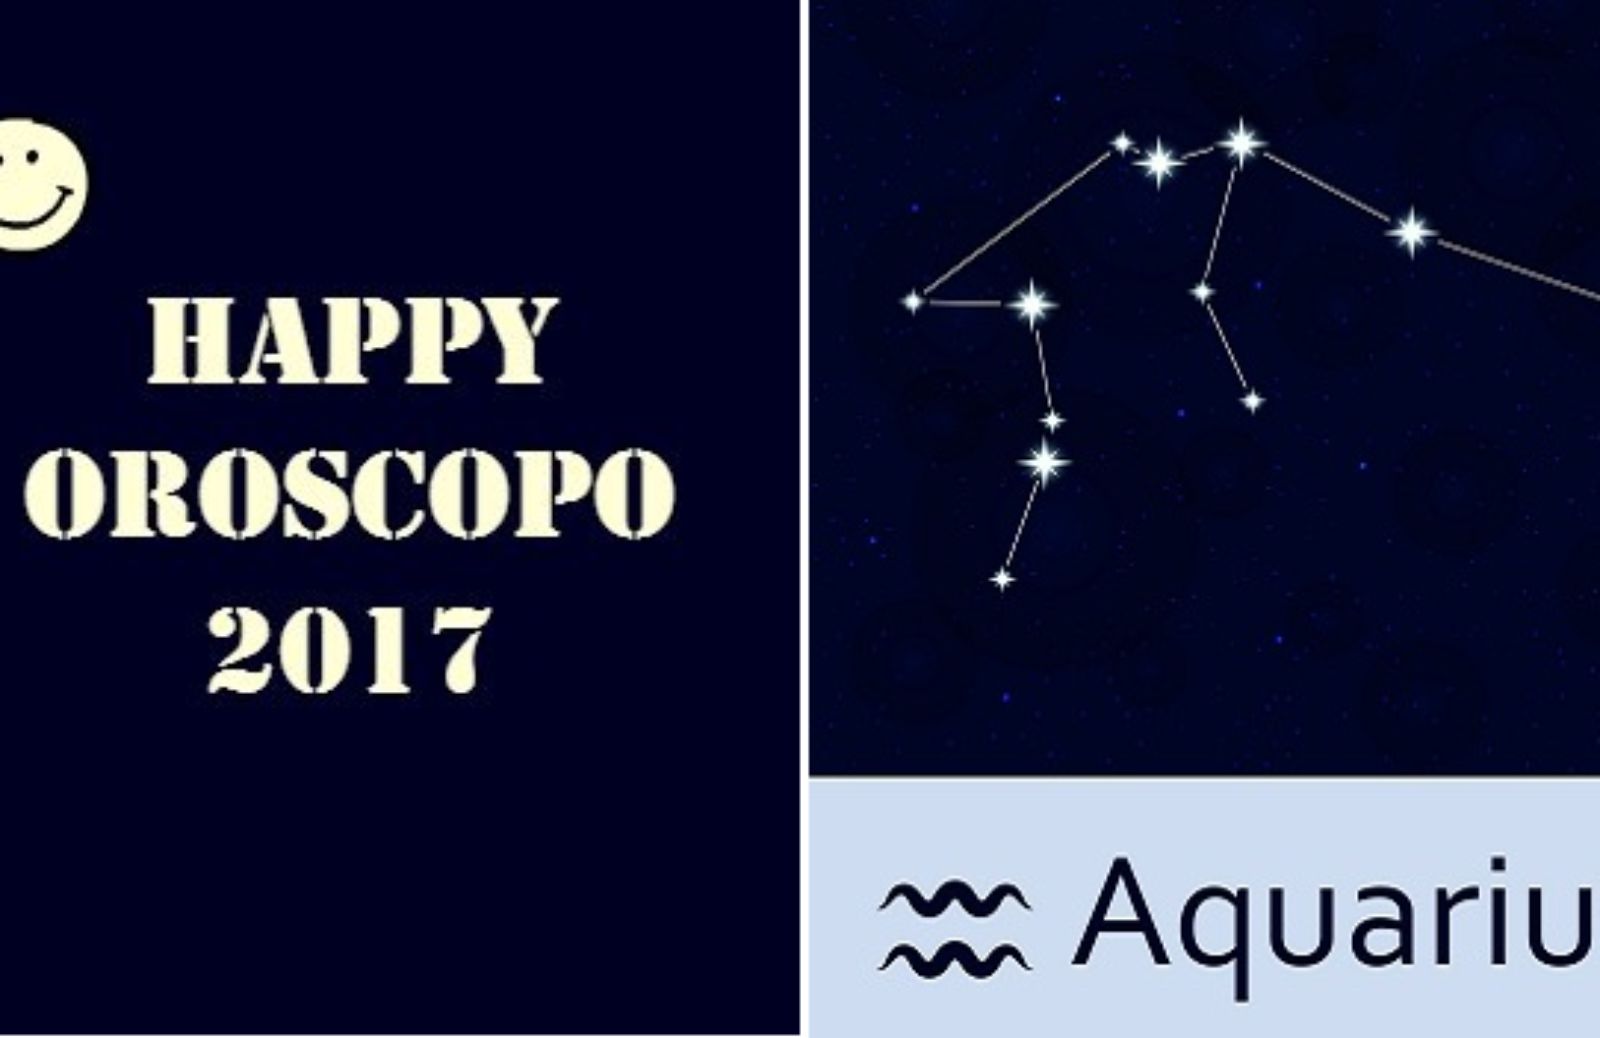 Happy Oroscopo 2017: il segno dell'Acquario